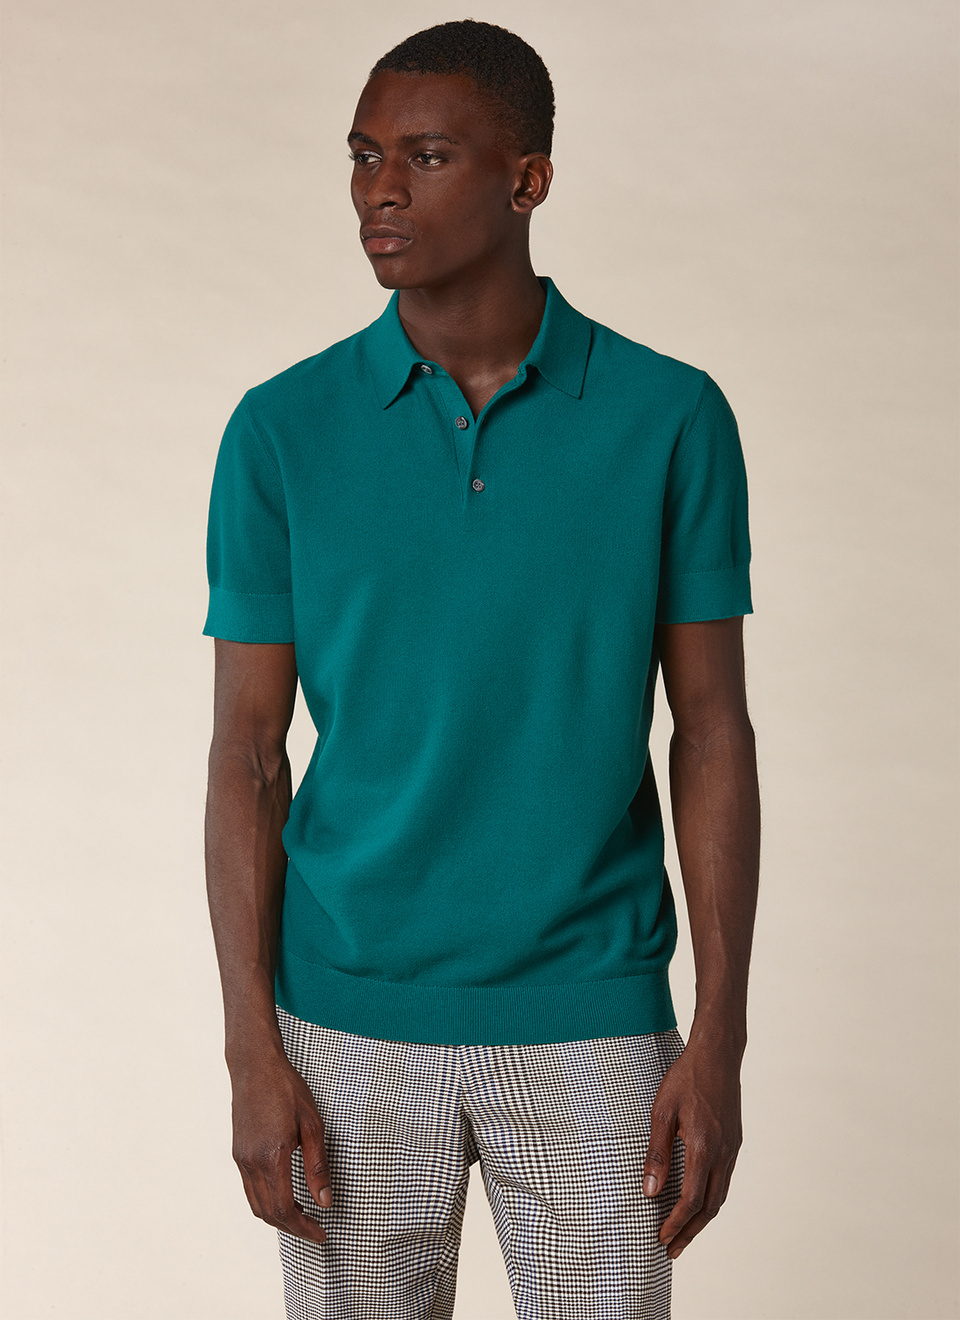 Emerald green collar neck polo shirt 21EA2PIRO-NA01/43 - Men's cotton ...